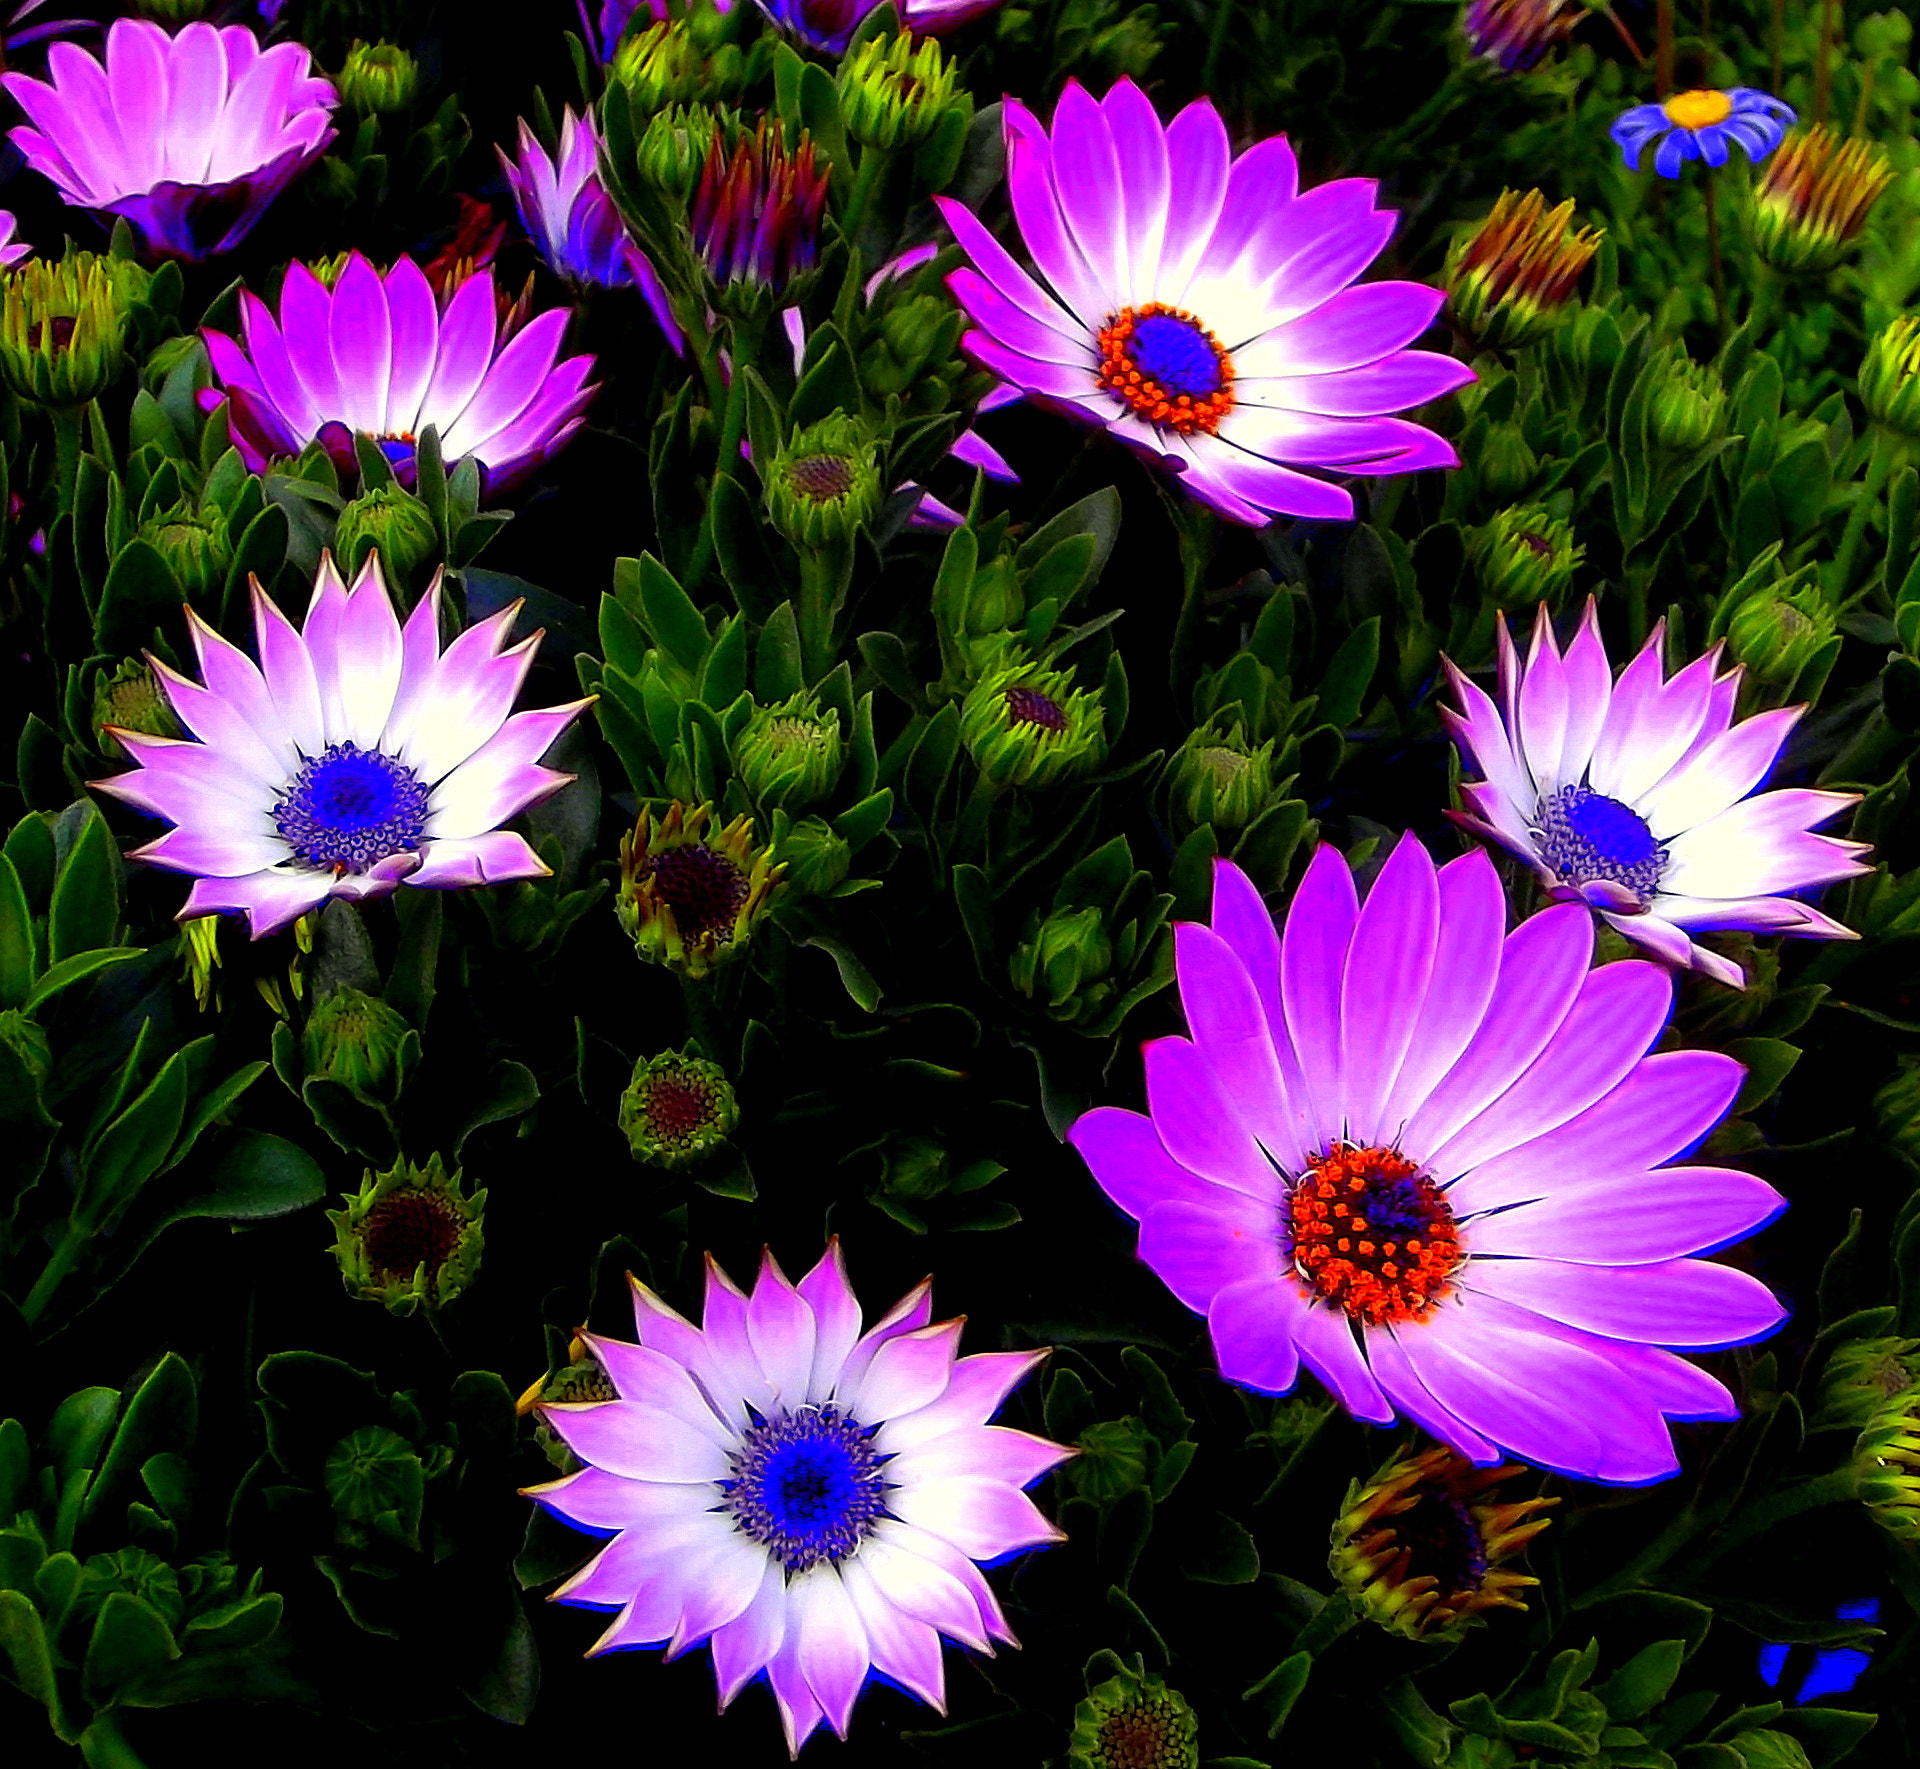 Fujifilm FinePix JX250 sample photo. Colori e fiori meravigliosi, in macro. photography